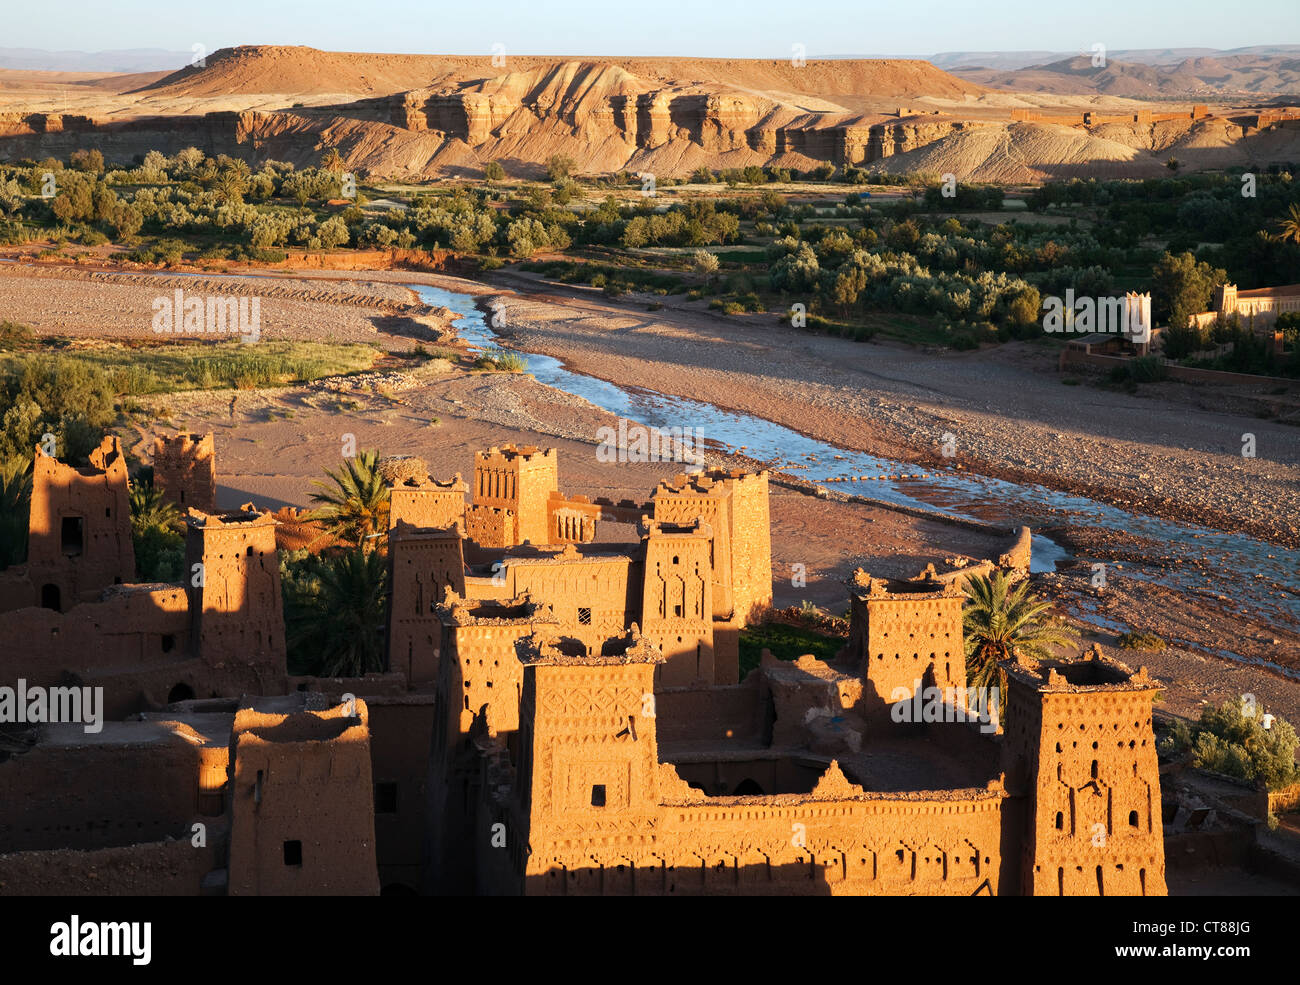 Ait Benhaddou, Marokko; 13. Jahrhundert befestigte Stadt, Ort von mehr als 20 Hollywood-Filmen. Stockfoto